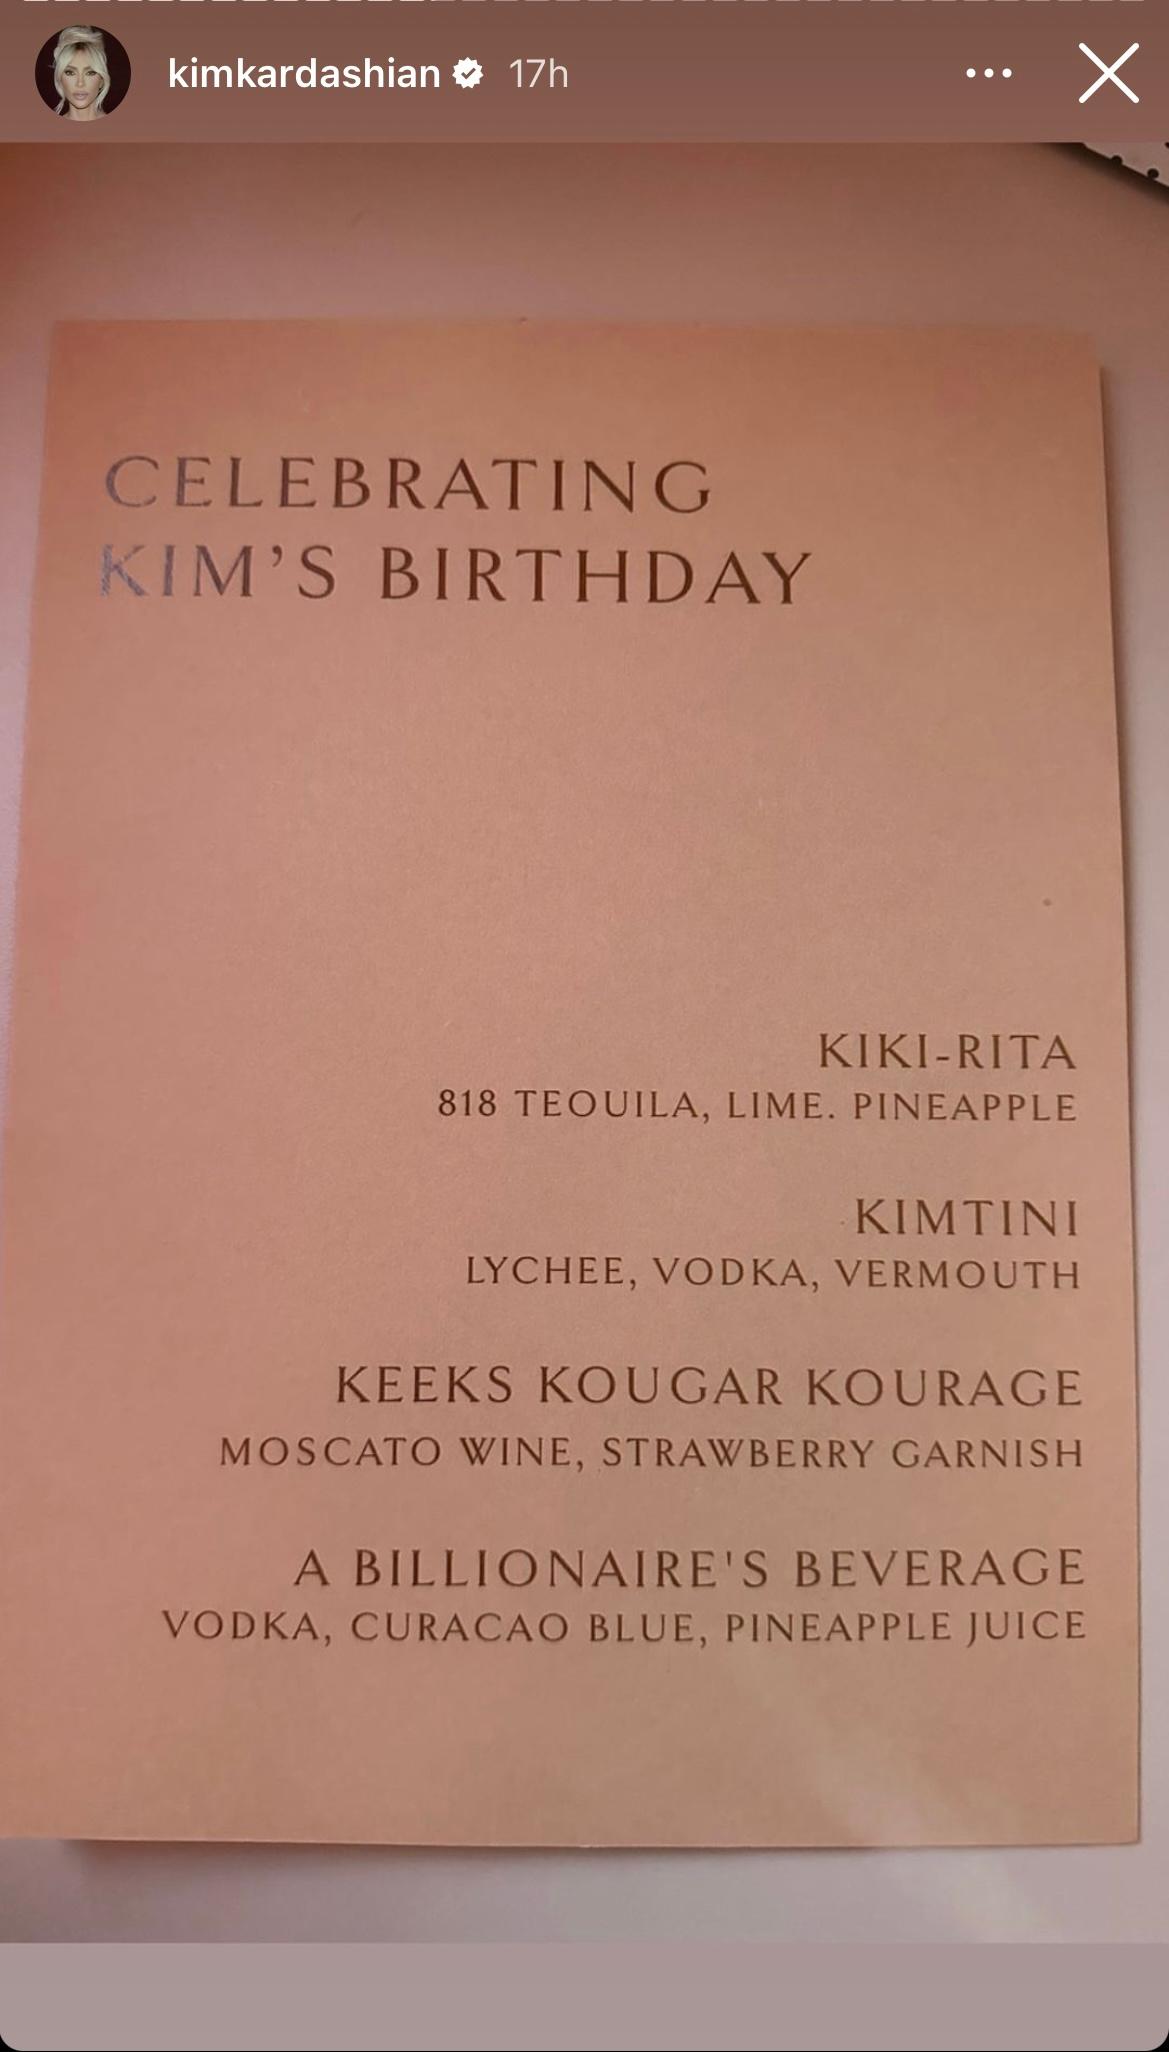 Kim Kardashian's 42nd birthday celebration